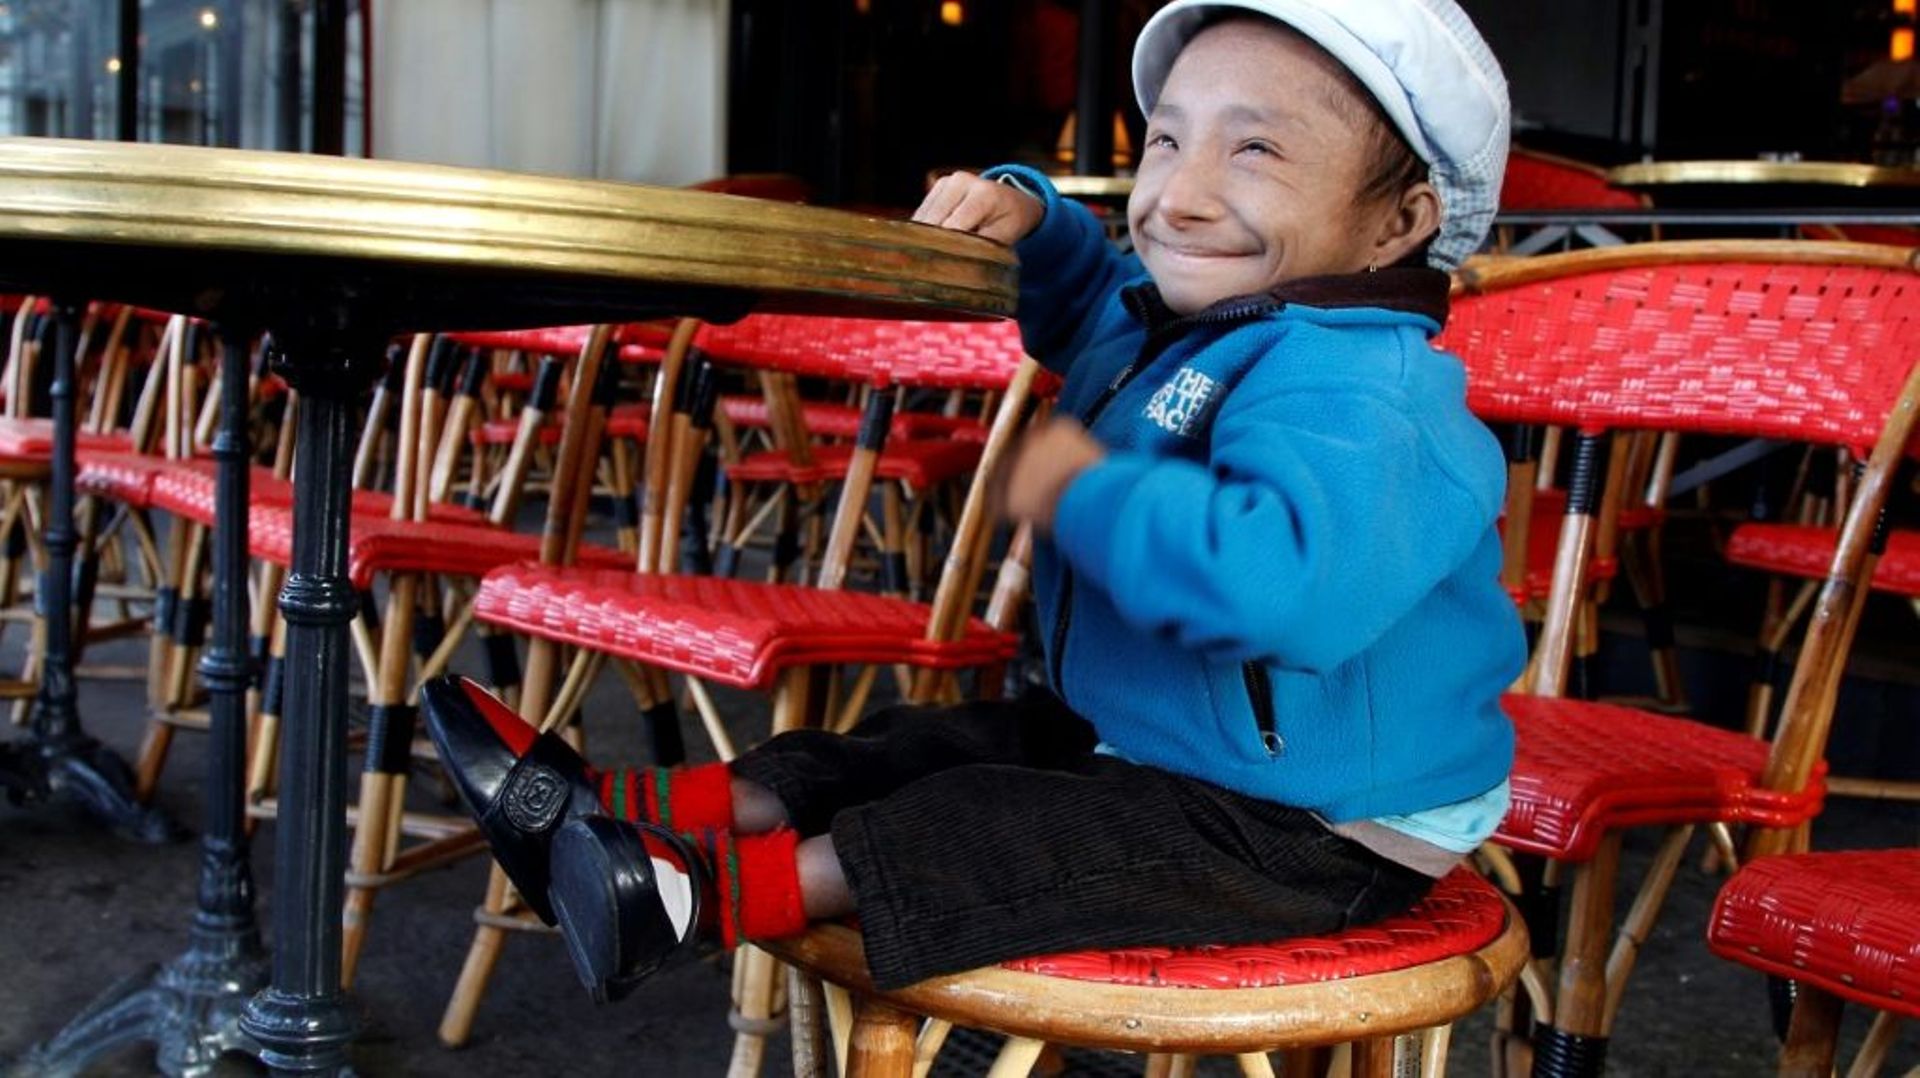 Khagendra Thapa Magar, considéré comme l'homme le plus petit du monde, à Paris en octobre 2011.